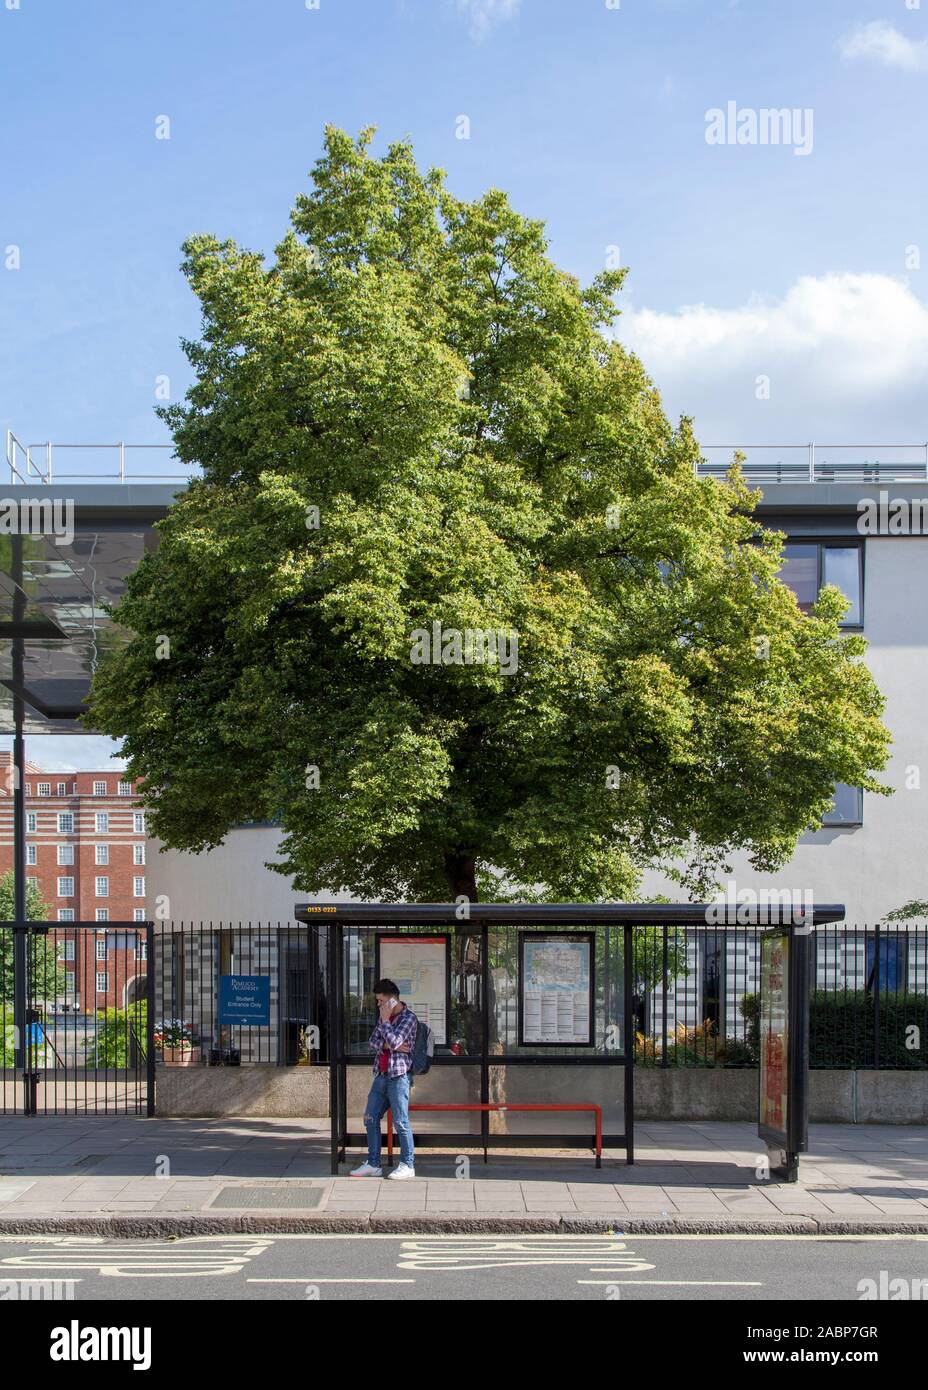 Árbol urbano de lima de hoja pequeña (Tilia cordata) fuera de la Academia Pimlico, Lupus Street, Londres SW1, Reino Unido Foto de stock